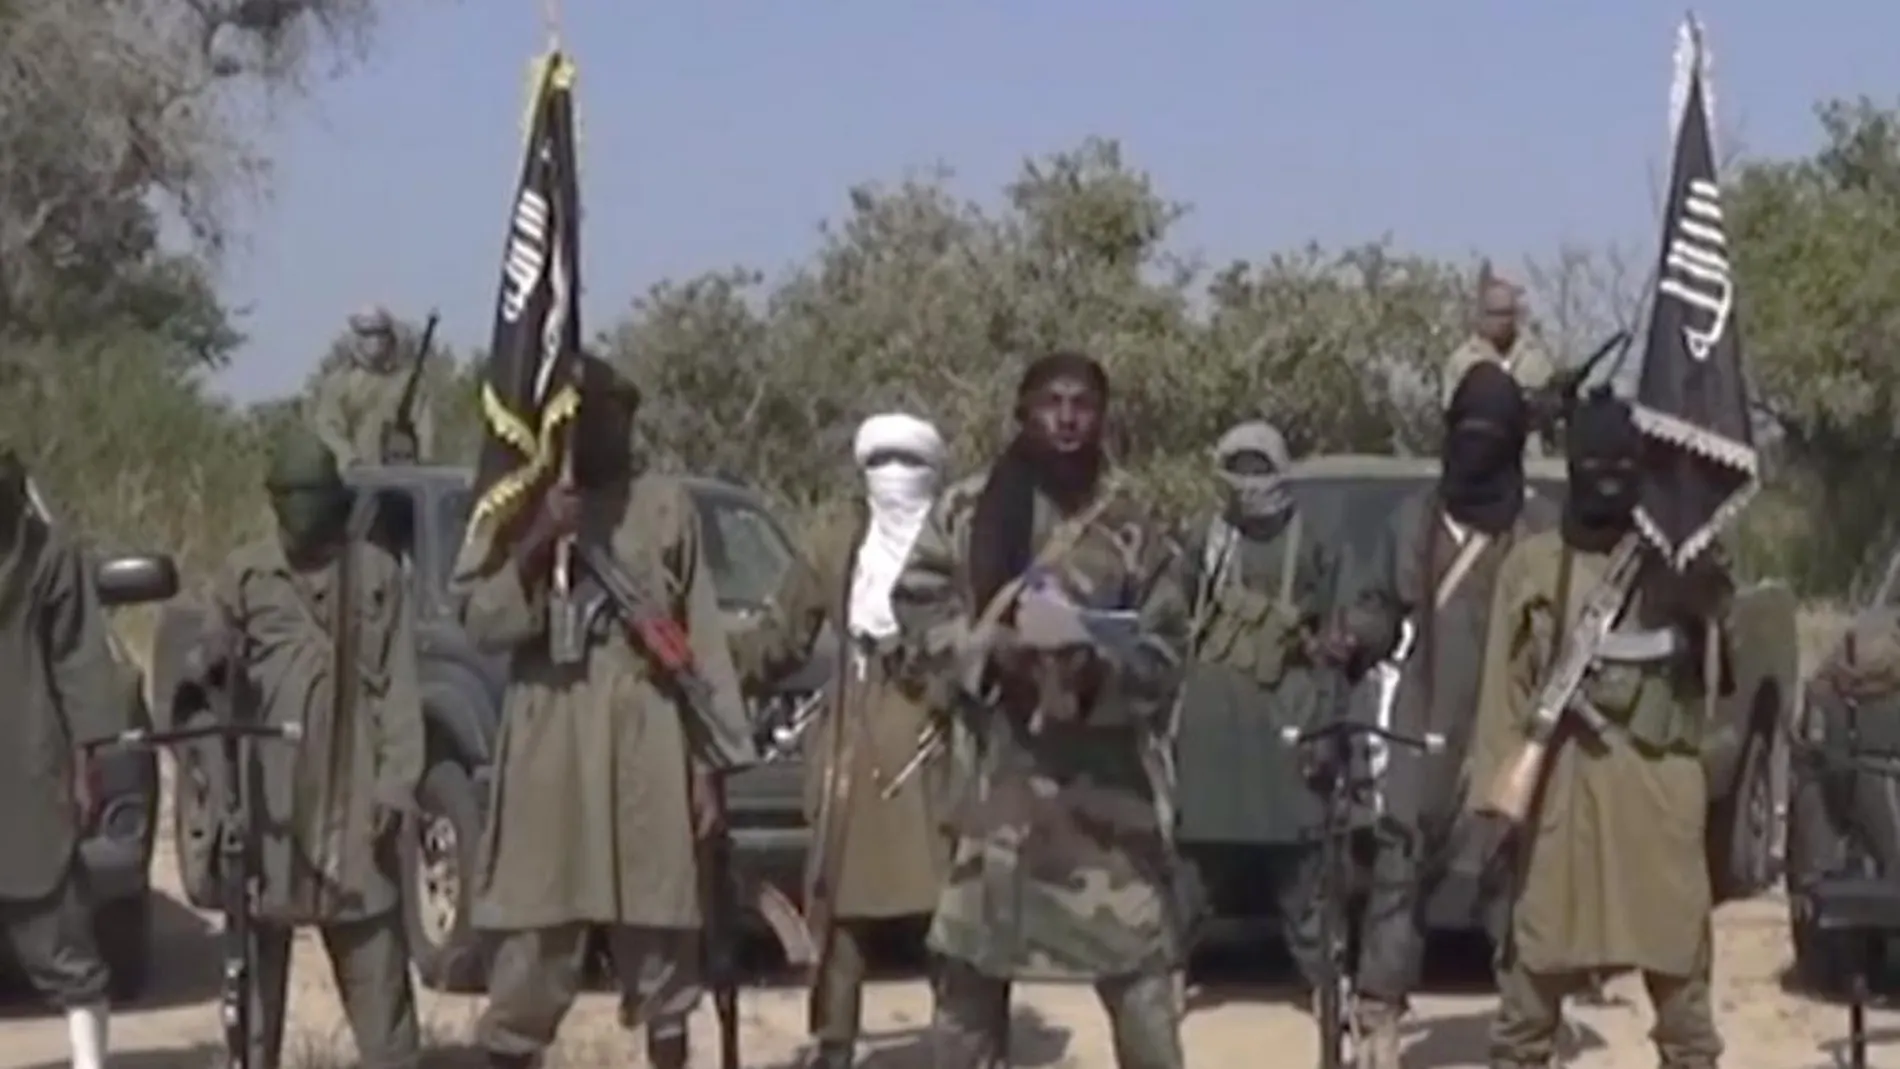 El grupo terrorista Boko Haram mantiene secuestradas a decenas de personas